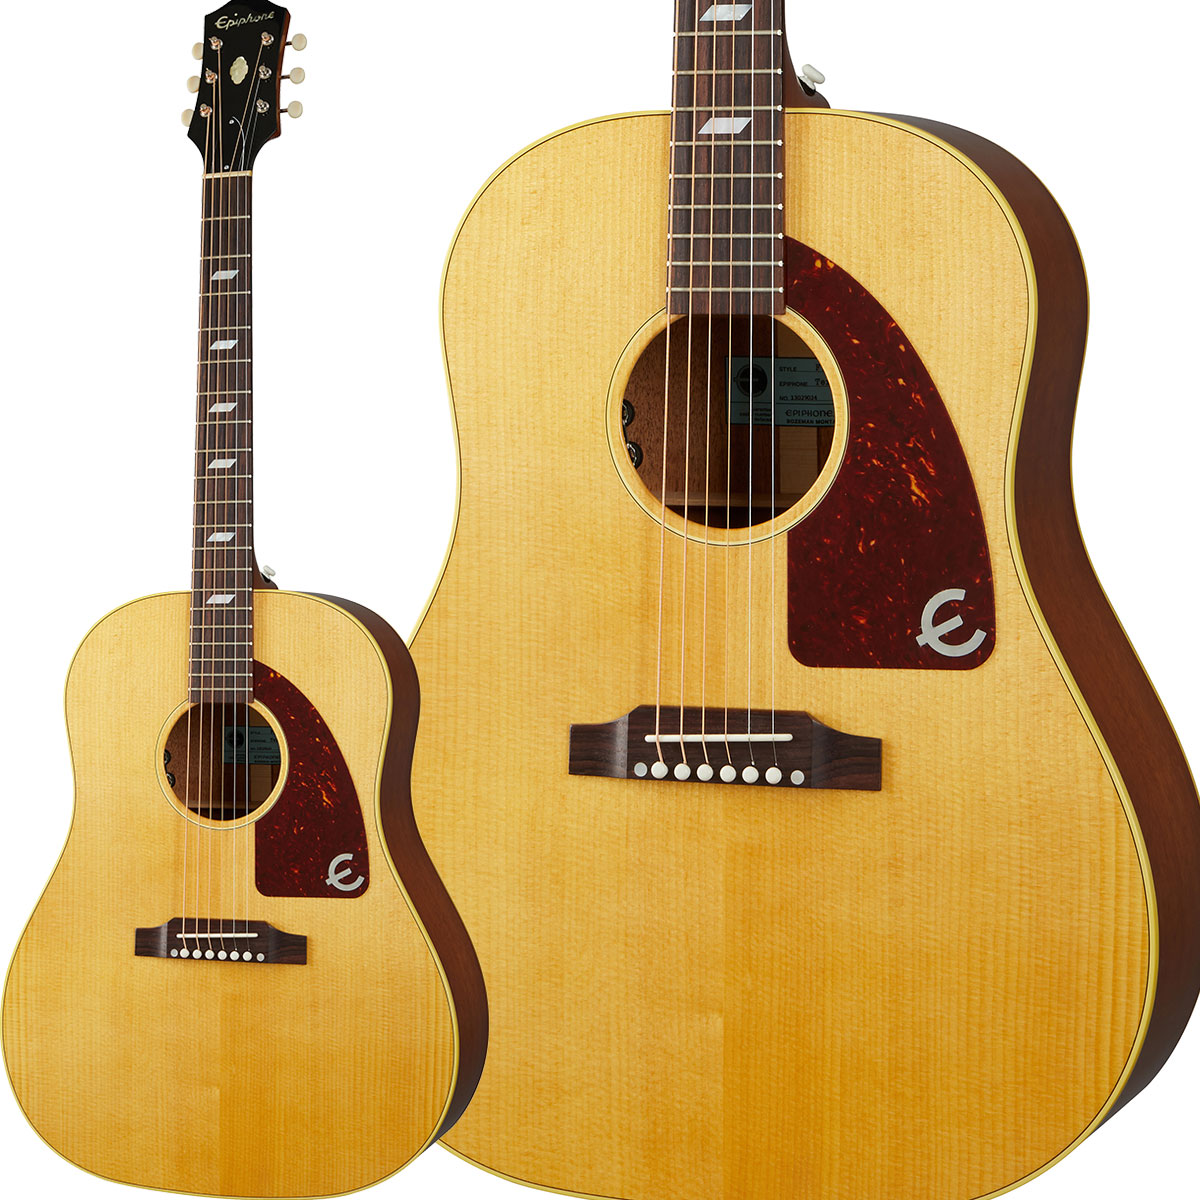 Gibson USA Texan Antique Natural アコースティックギター USAハンドメイド オール単板 ギブソン テキサン